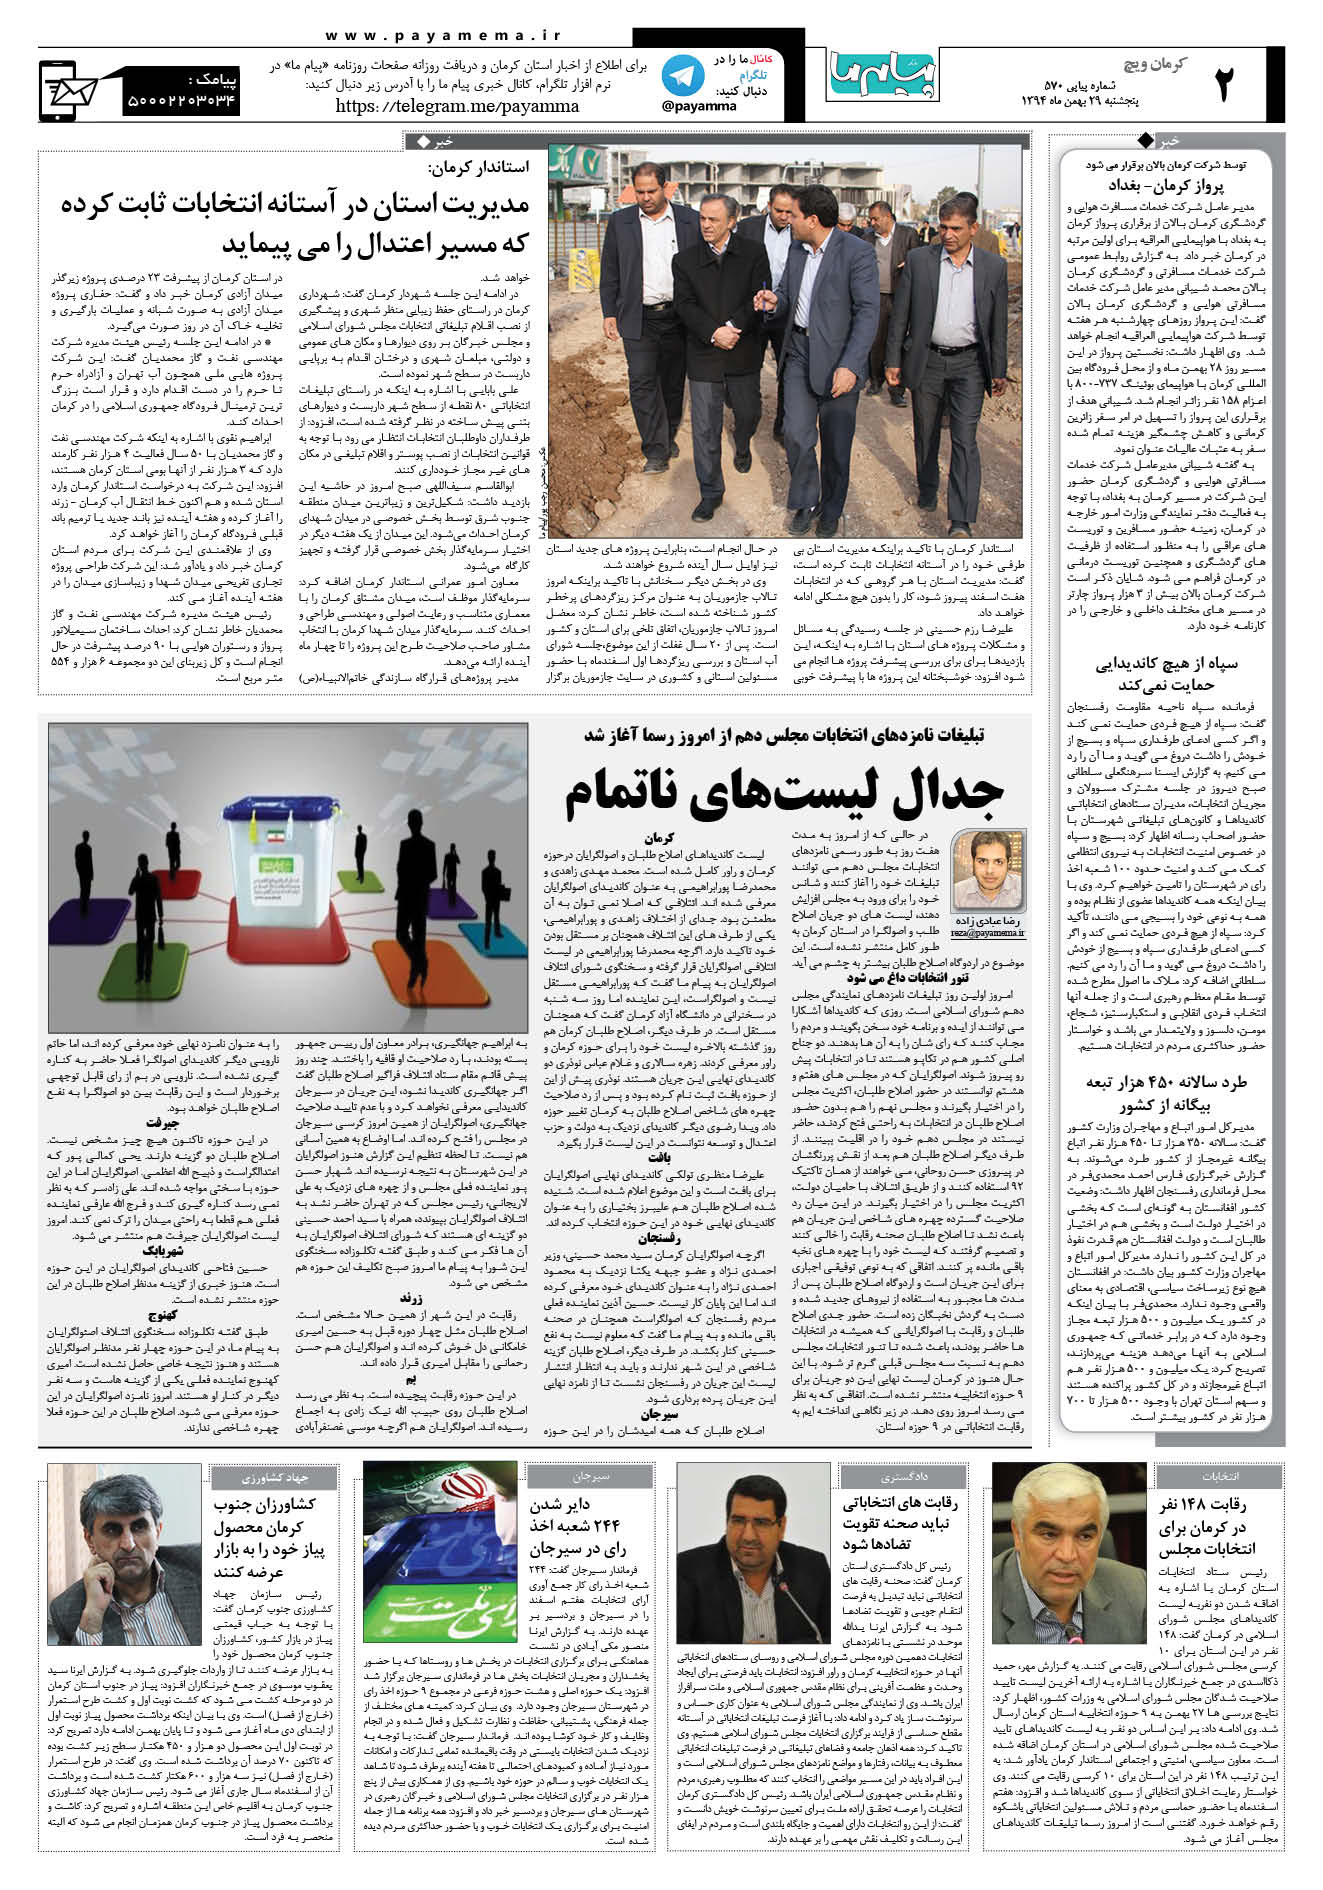 صفحه کرمان ویج شماره 570 روزنامه پیام ما